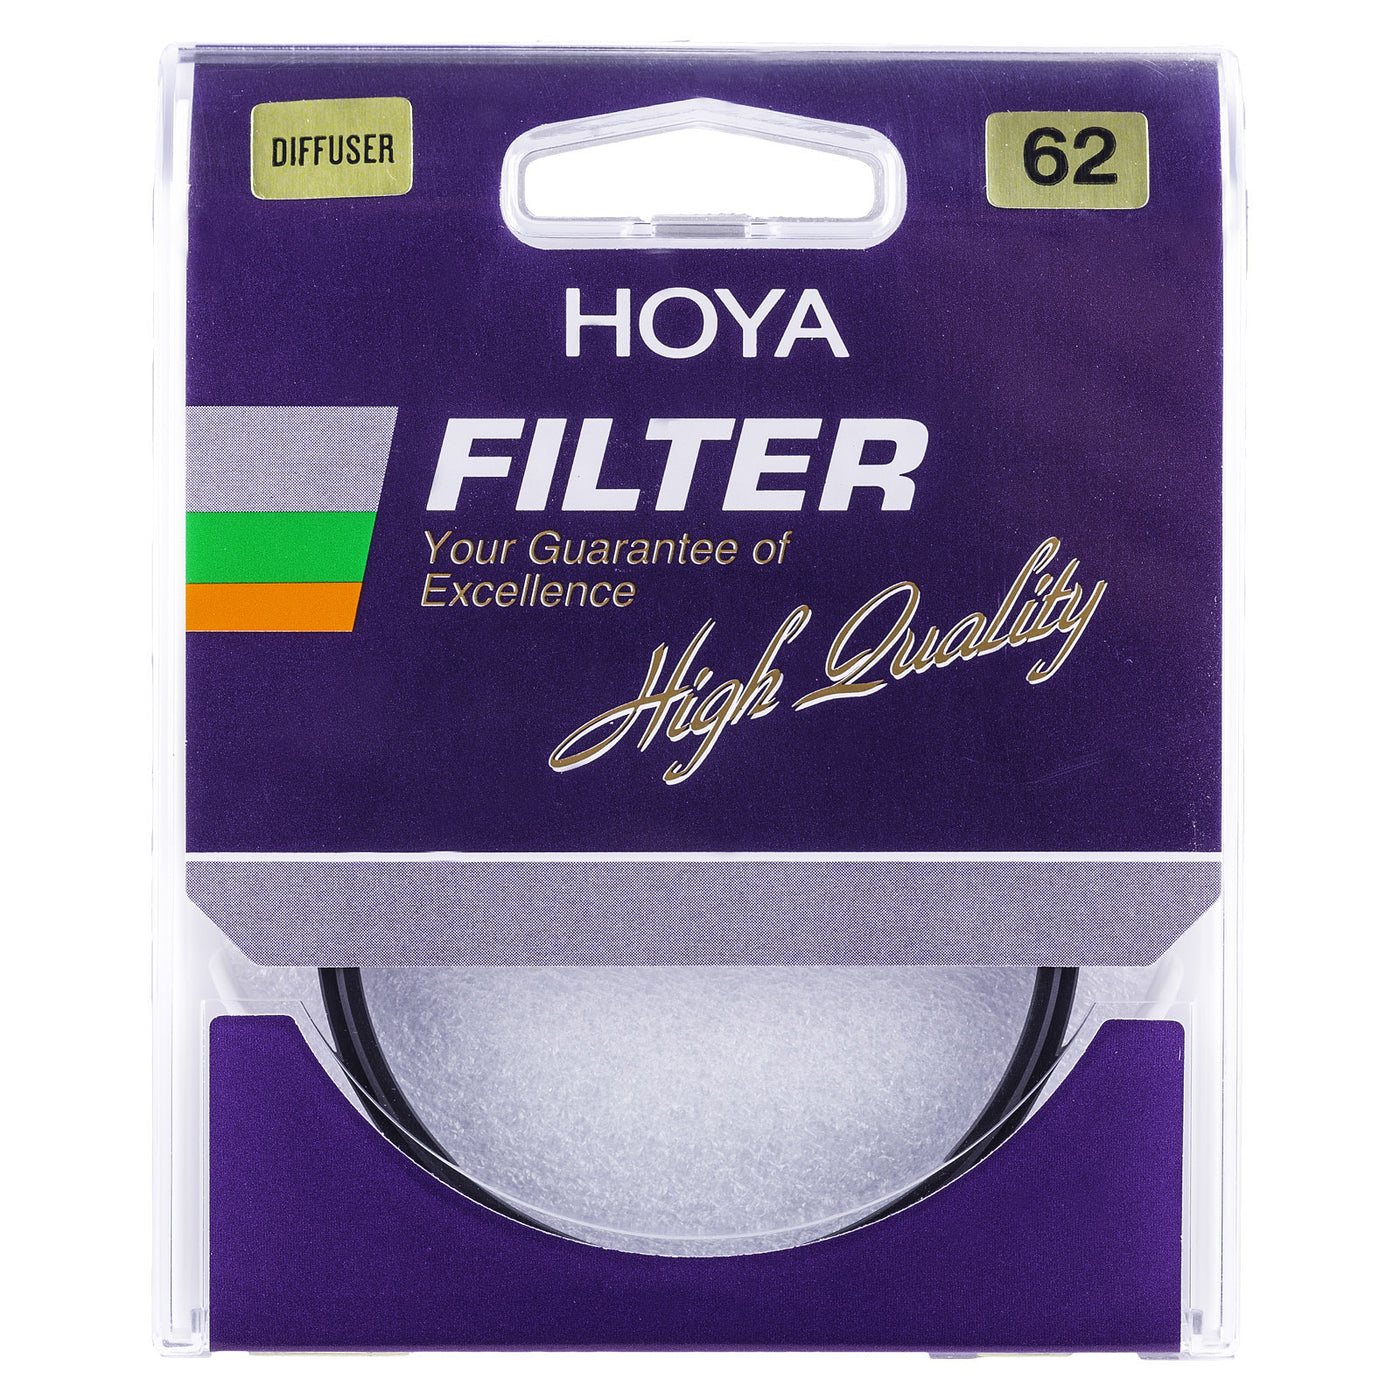 Hoya Diffuser Filter Box